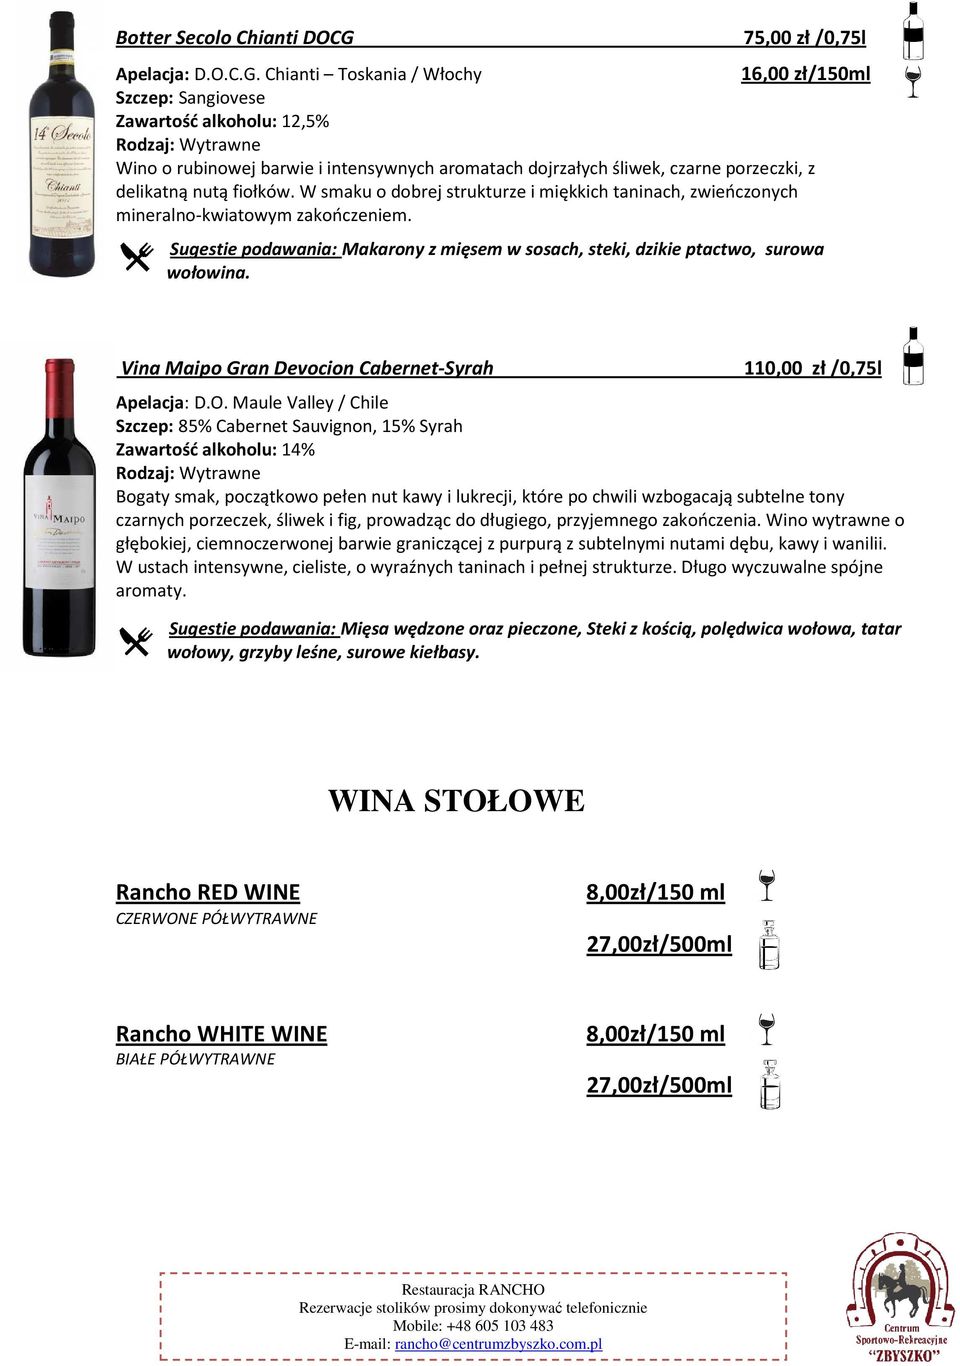 Chianti Toskania / Włochy Szczep: Sangiovese Zawartość alkoholu: 12,5% Wino o rubinowej barwie i intensywnych aromatach dojrzałych śliwek, czarne porzeczki, z delikatną nutą fiołków.